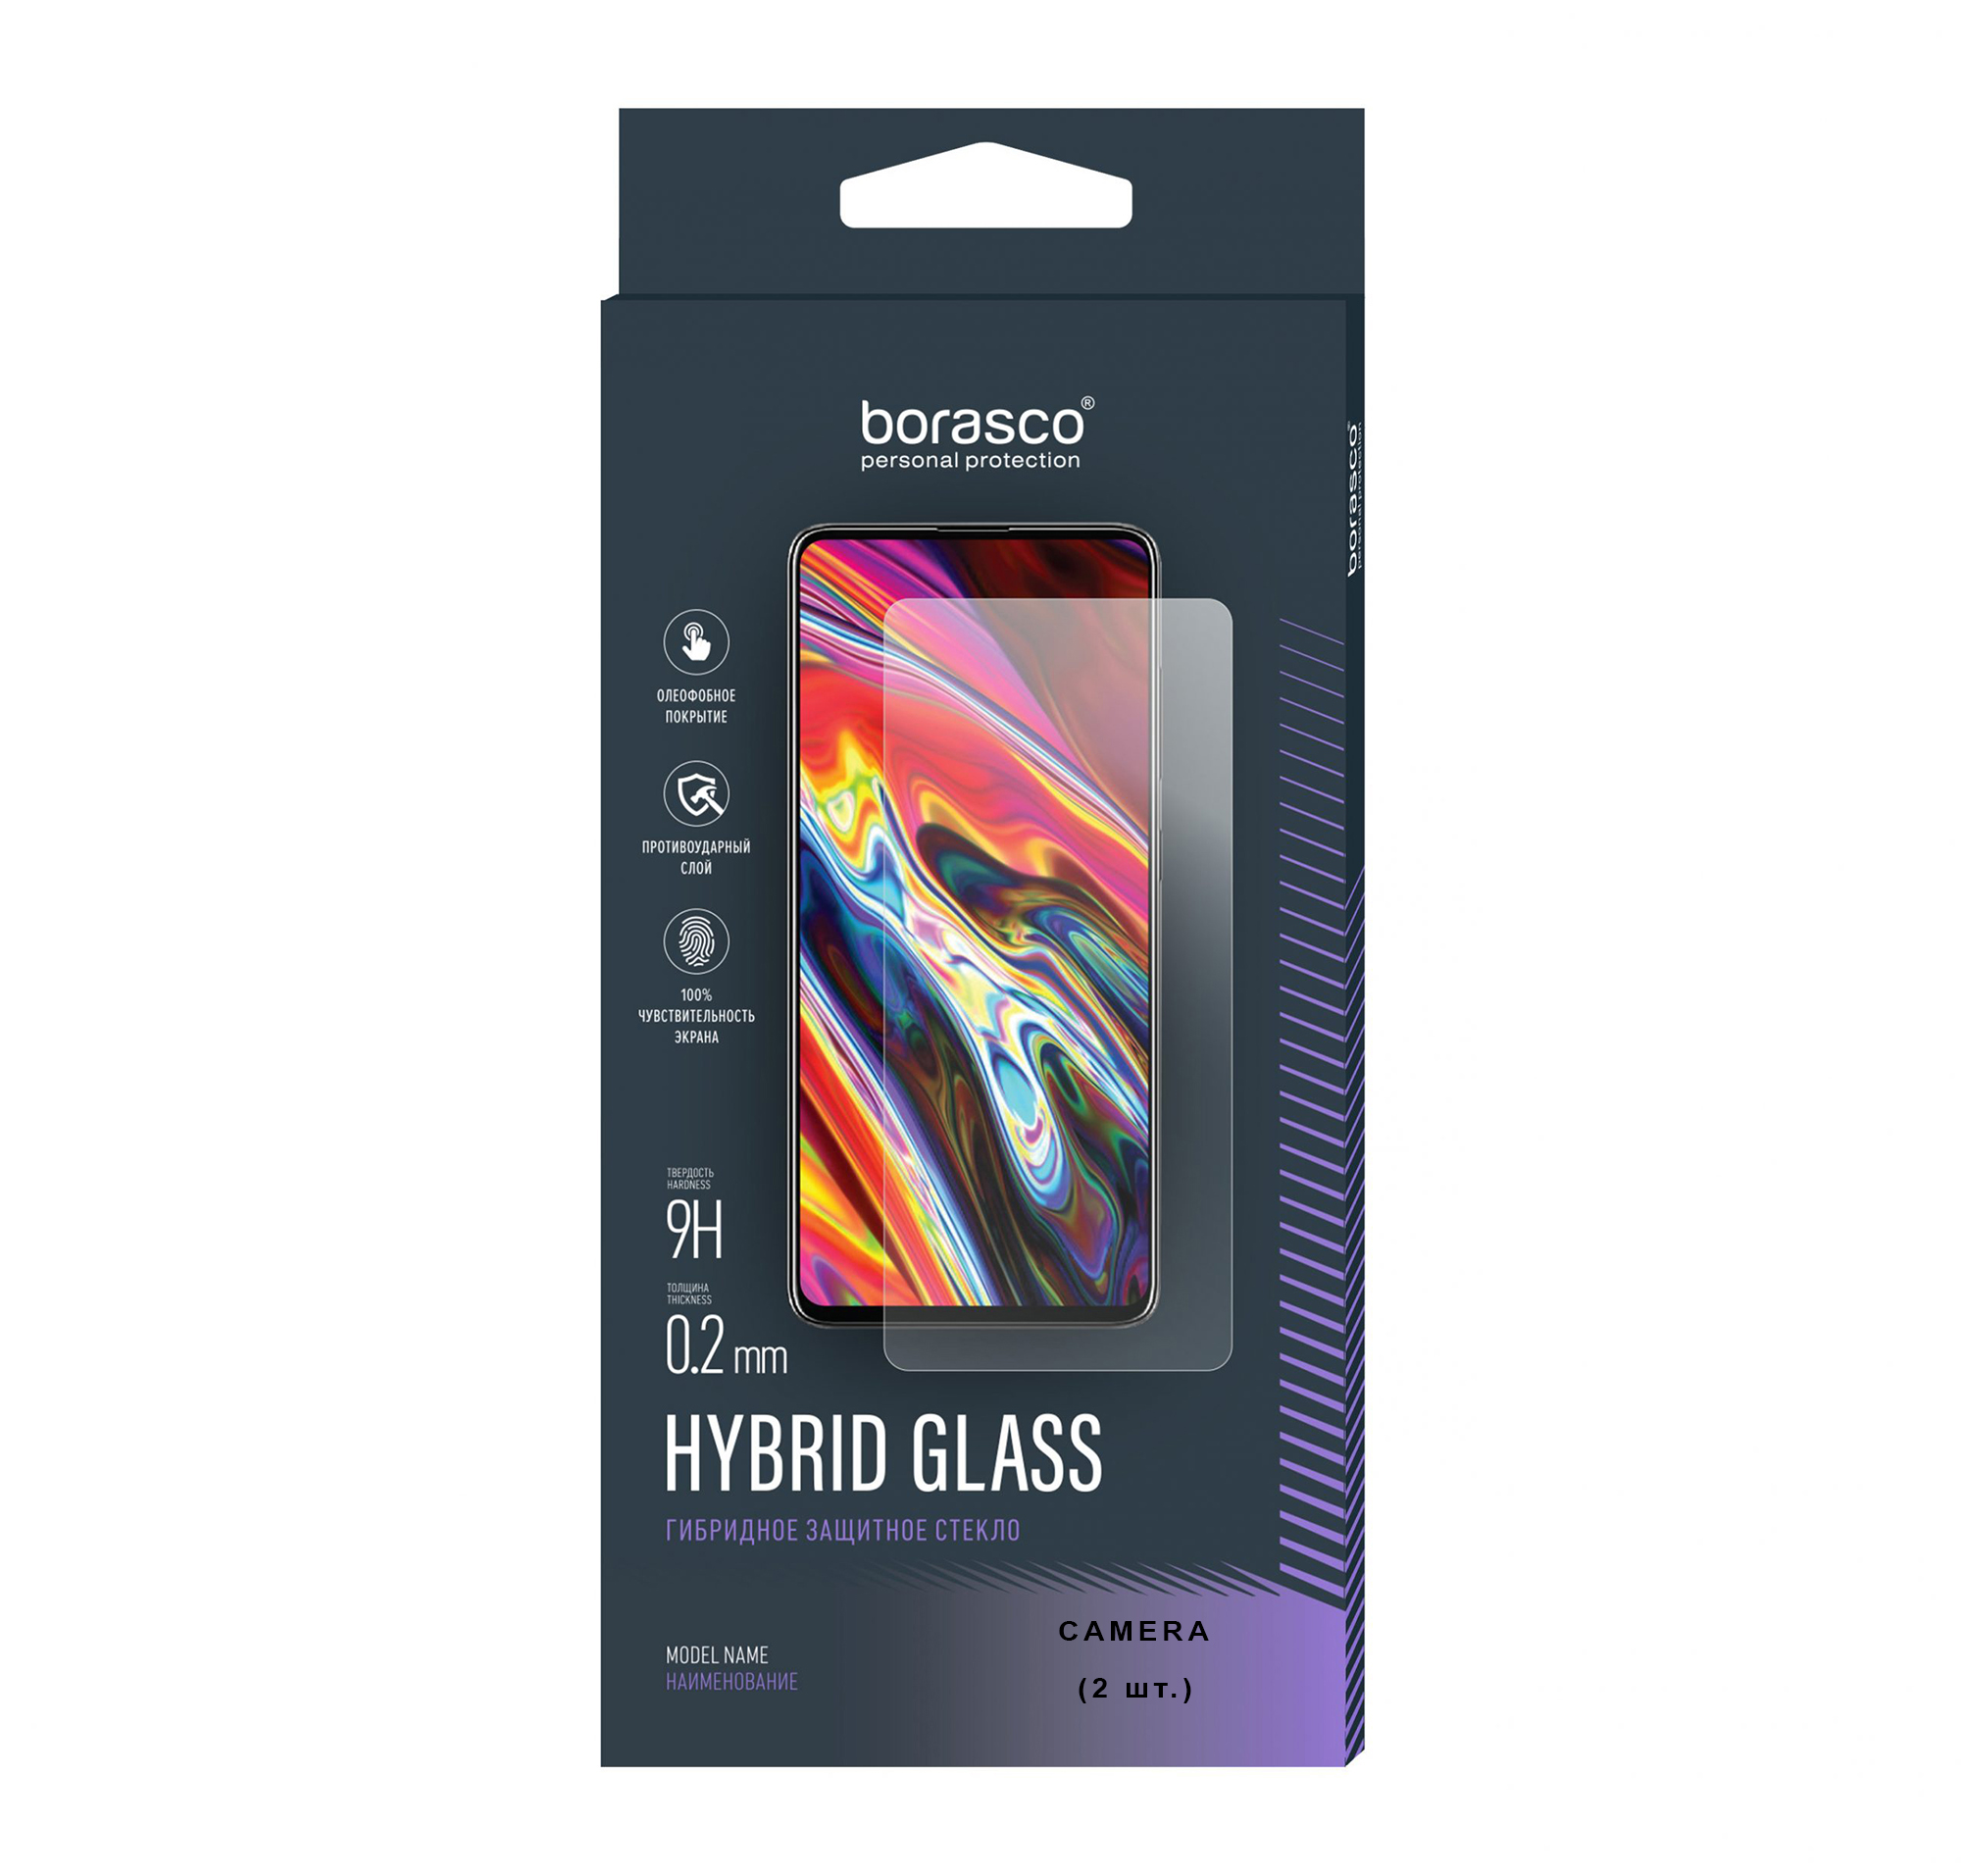 Защитное стекло (Экран+Камера) Hybrid Glass для Samsung Galaxy A71 защитное стекло для samsung a71 комплект 3 шт для самсунг а71 9d на весь экран